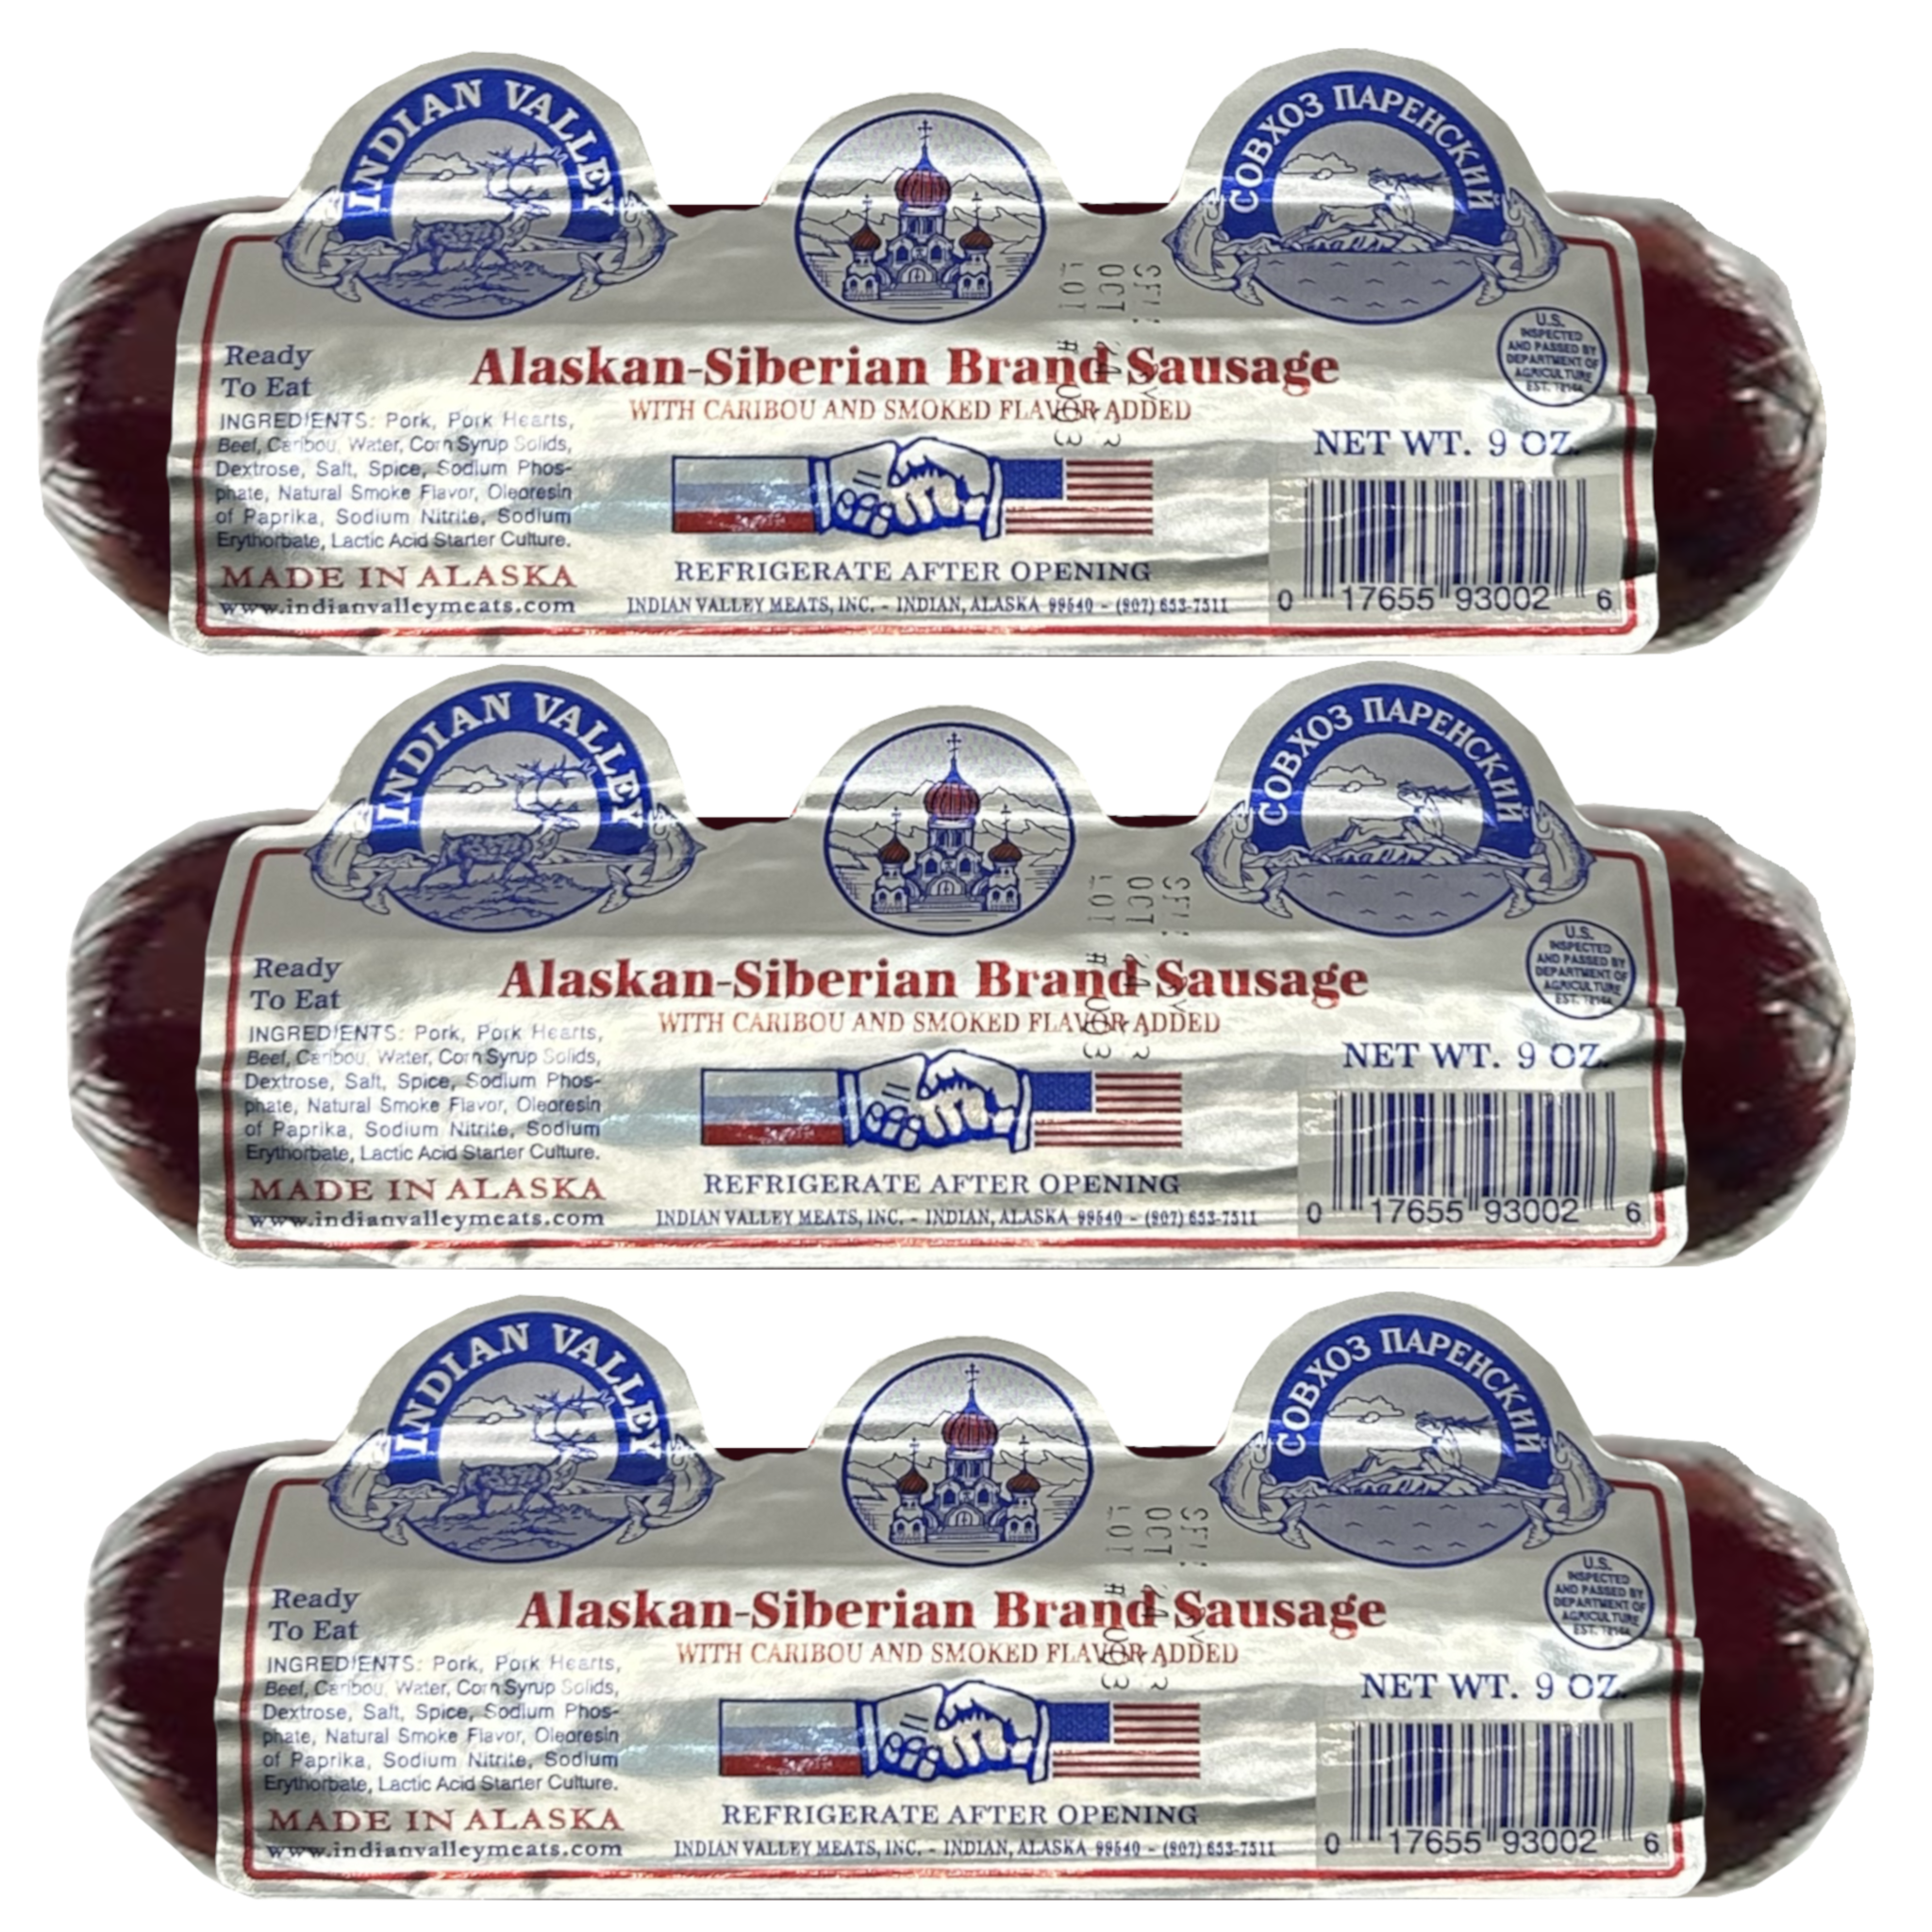 Alaskan-Siberian Sausage with Caribou